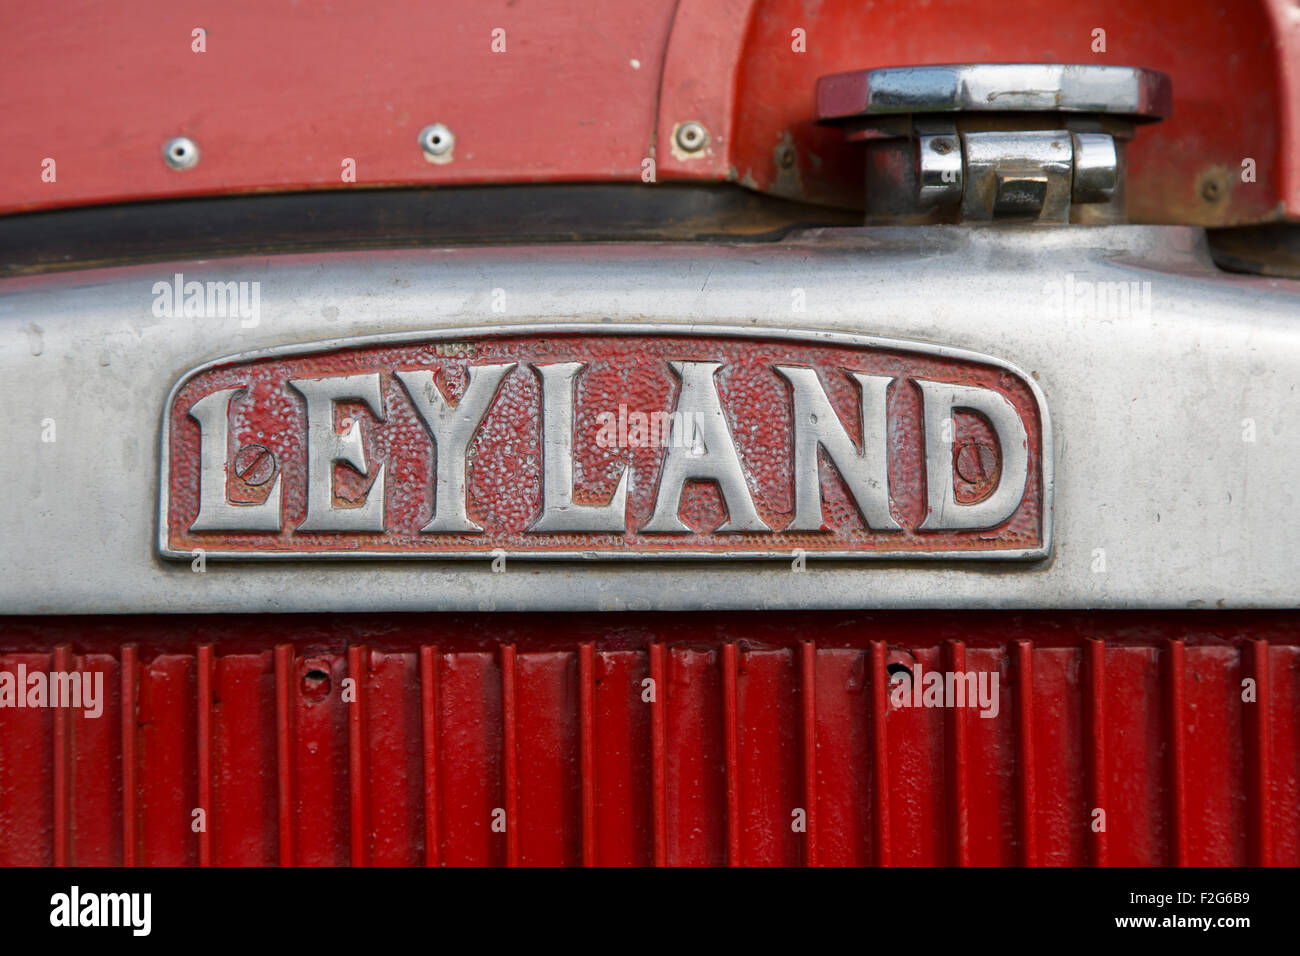 Leyland nameplate on commercial vehicle Stock Photo